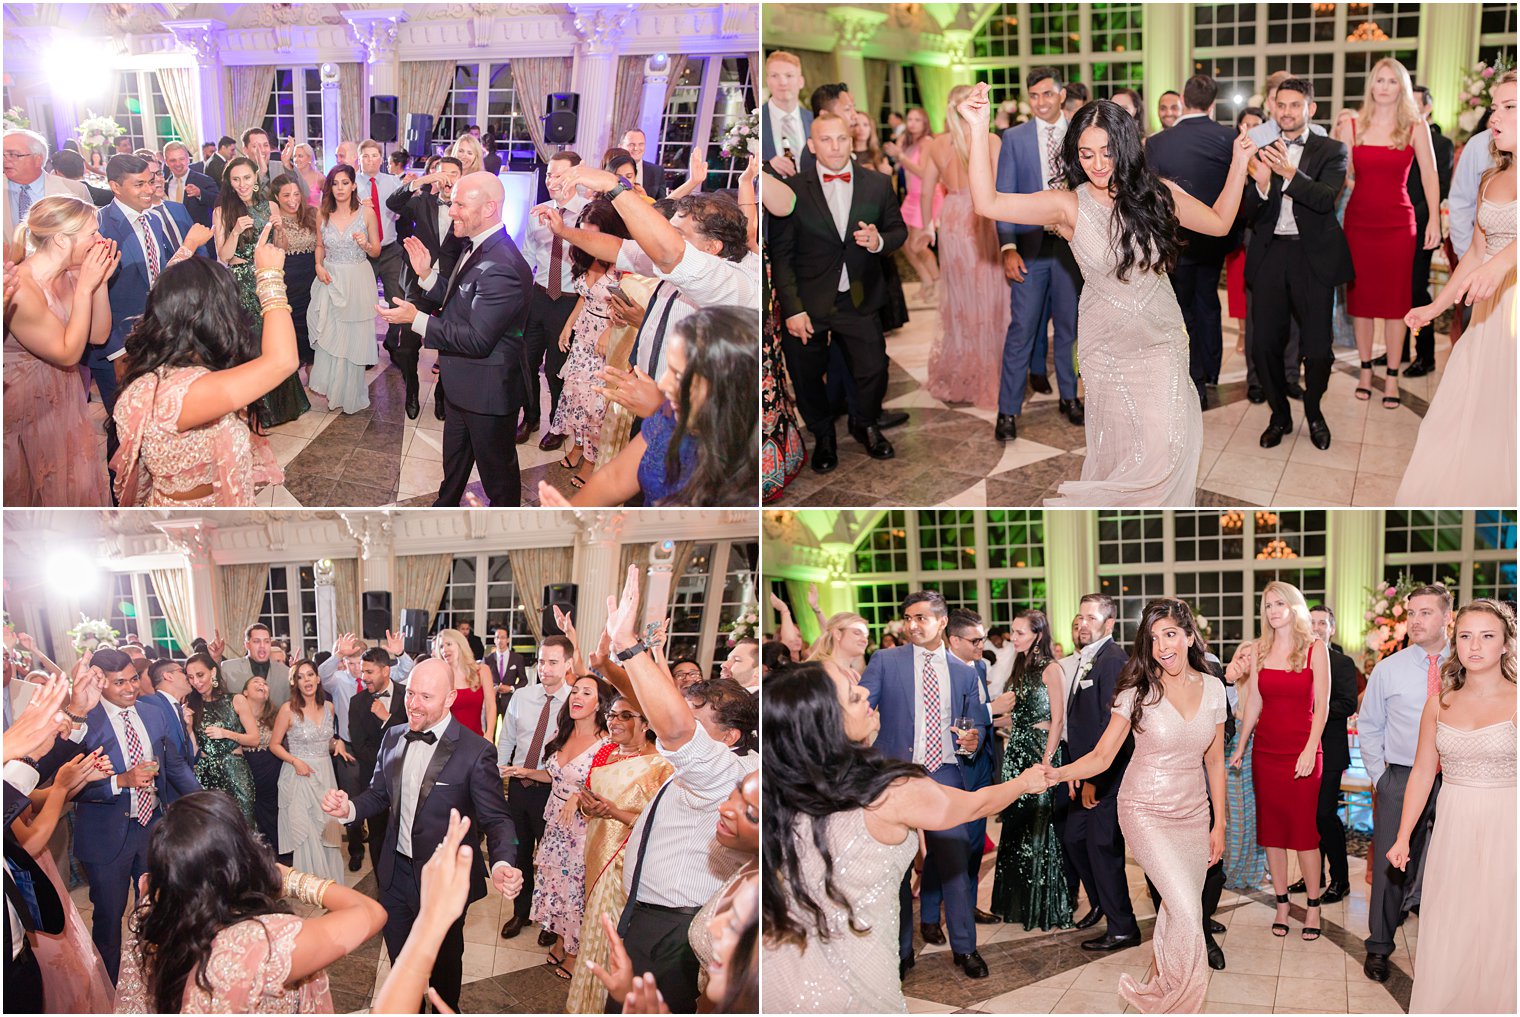 Wedding dancing reception | Ashford Estate Wedding Photos